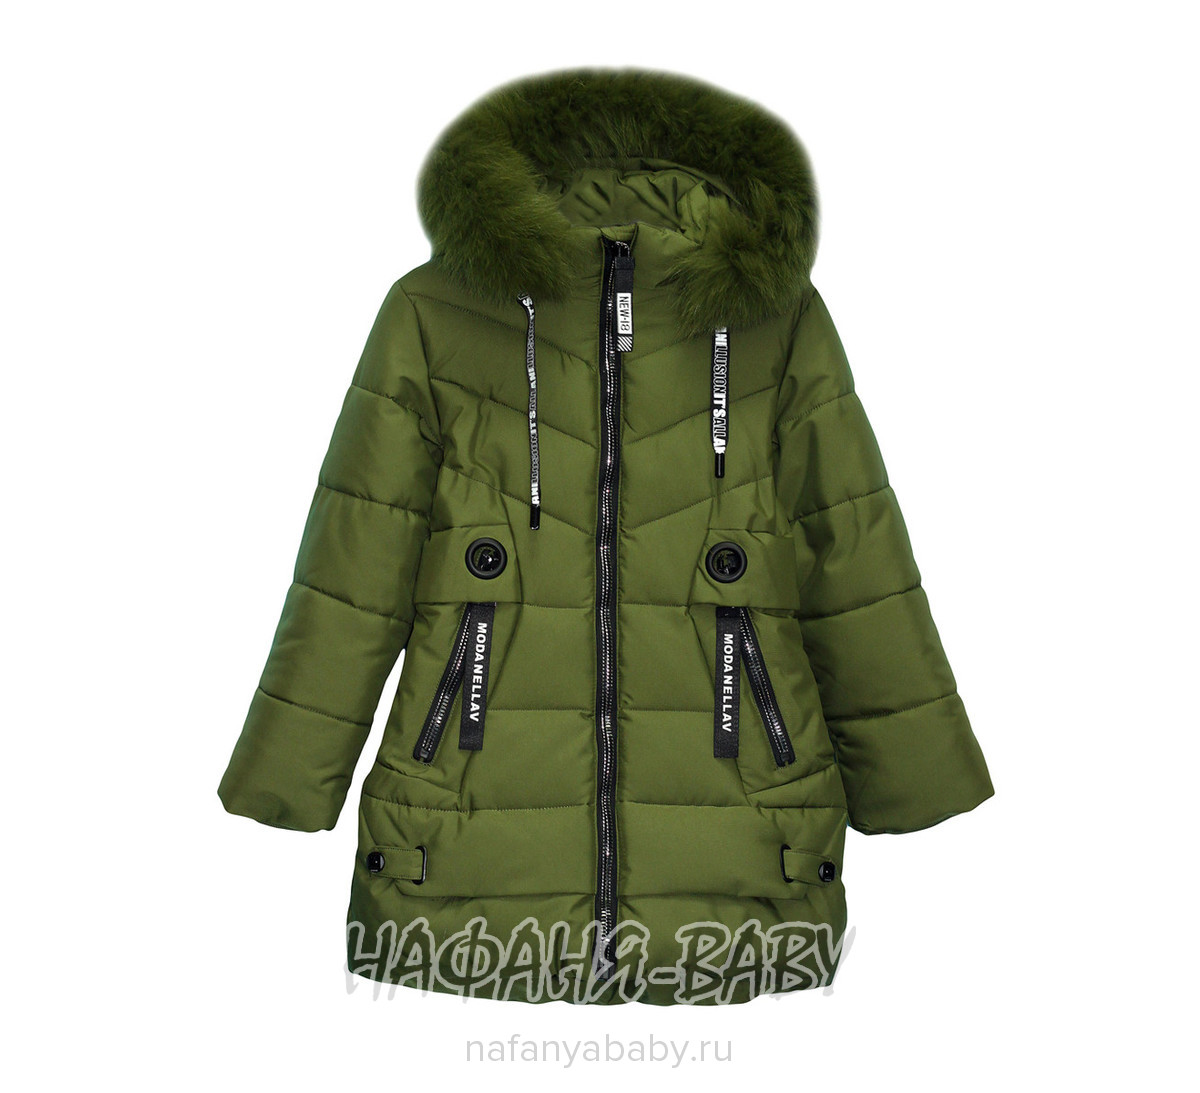 Зимняя куртка для девочки YUHANG арт: 1801, 10-15 лет, 5-9 лет, оптом Китай (Пекин)